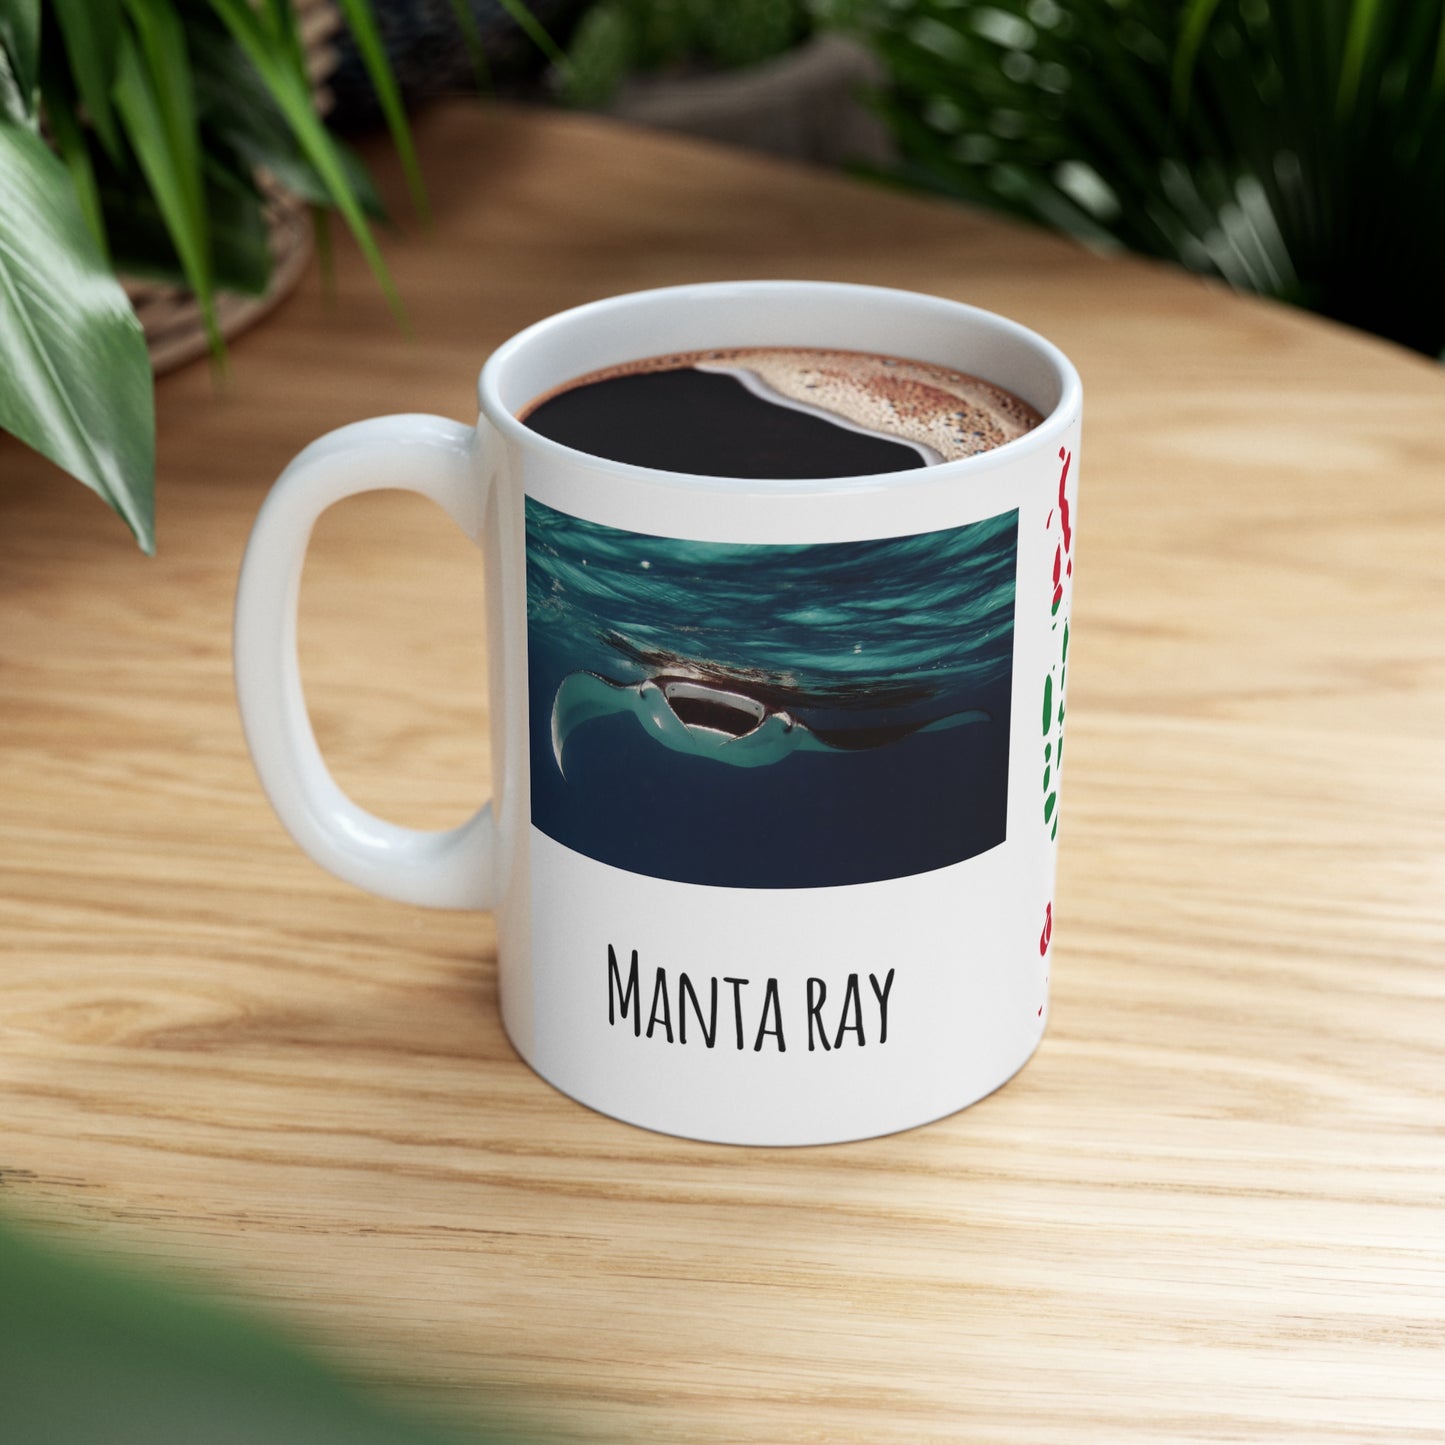 Mantaray 4 - Ceramic Mug 11oz